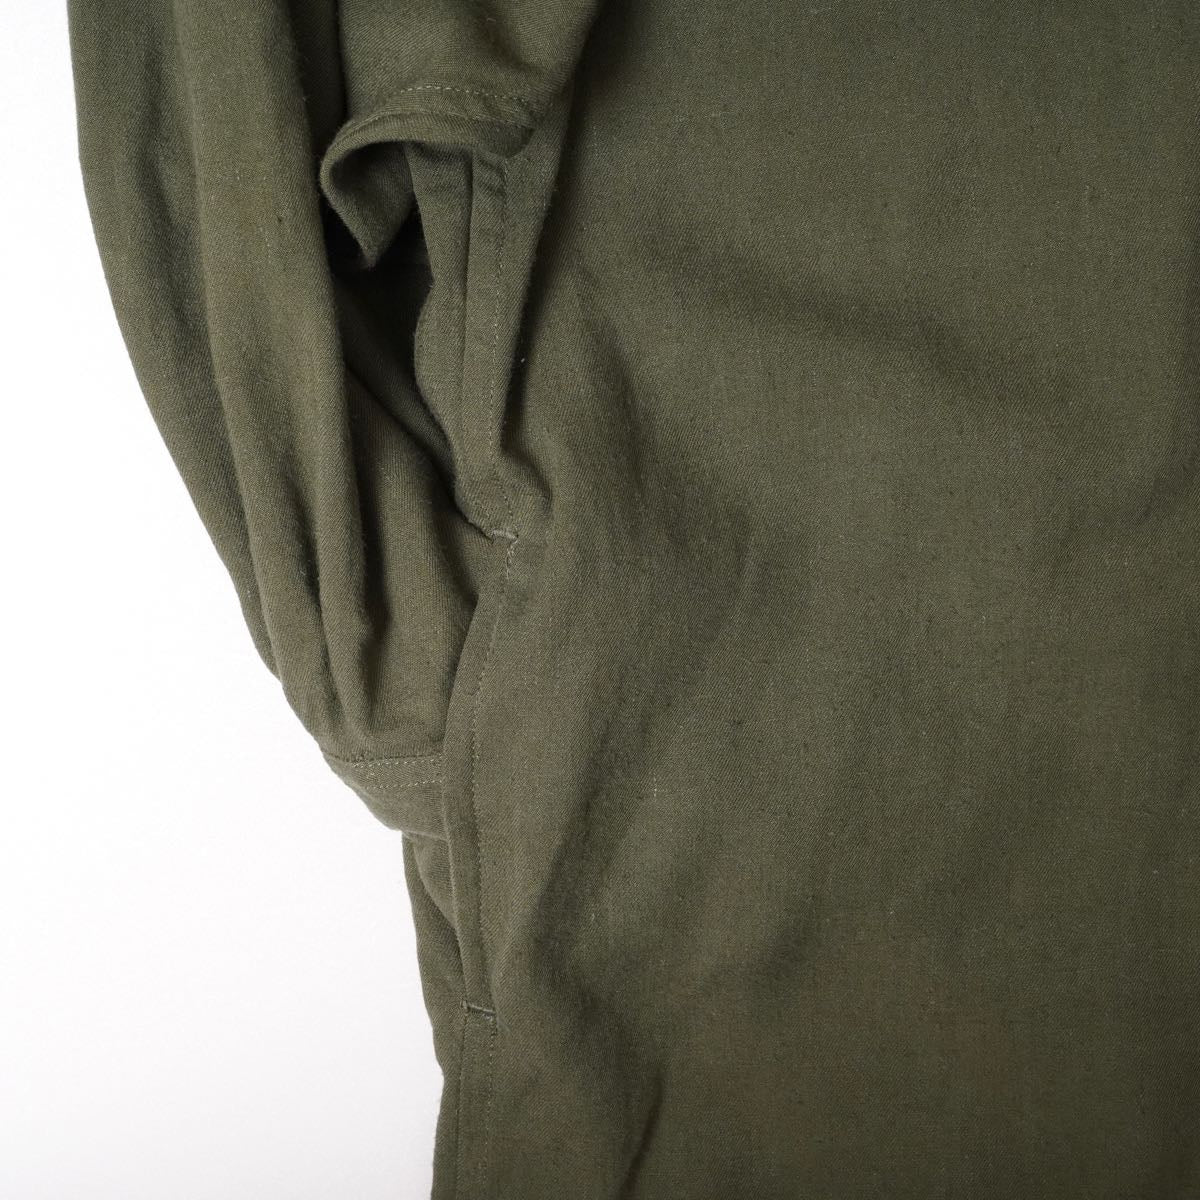 アドラーブル アーミーグリーン ビッグシルエット オックスフォード ロング シャツワンピース ADOLUVLE ORIGINAL ARMY-GREEN LONG SHIRT-DRESS